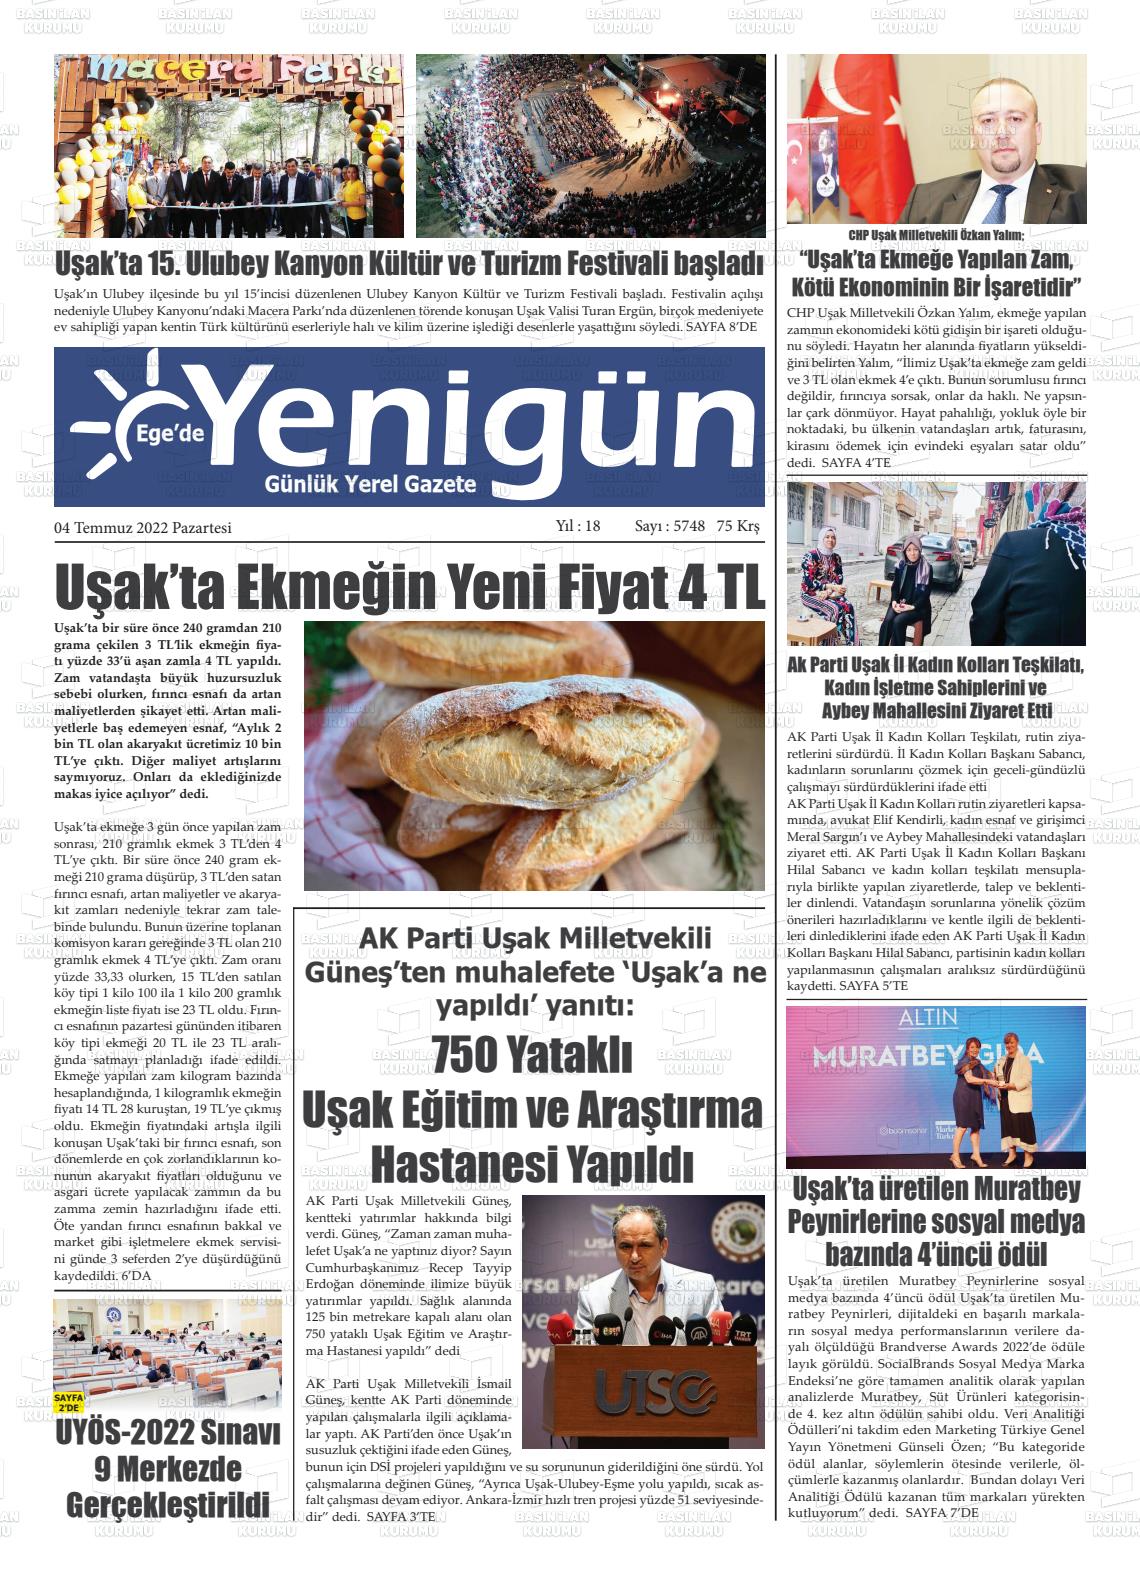 04 Temmuz 2022 EGE'DE YENİGÜN GAZETESİ Gazete Manşeti